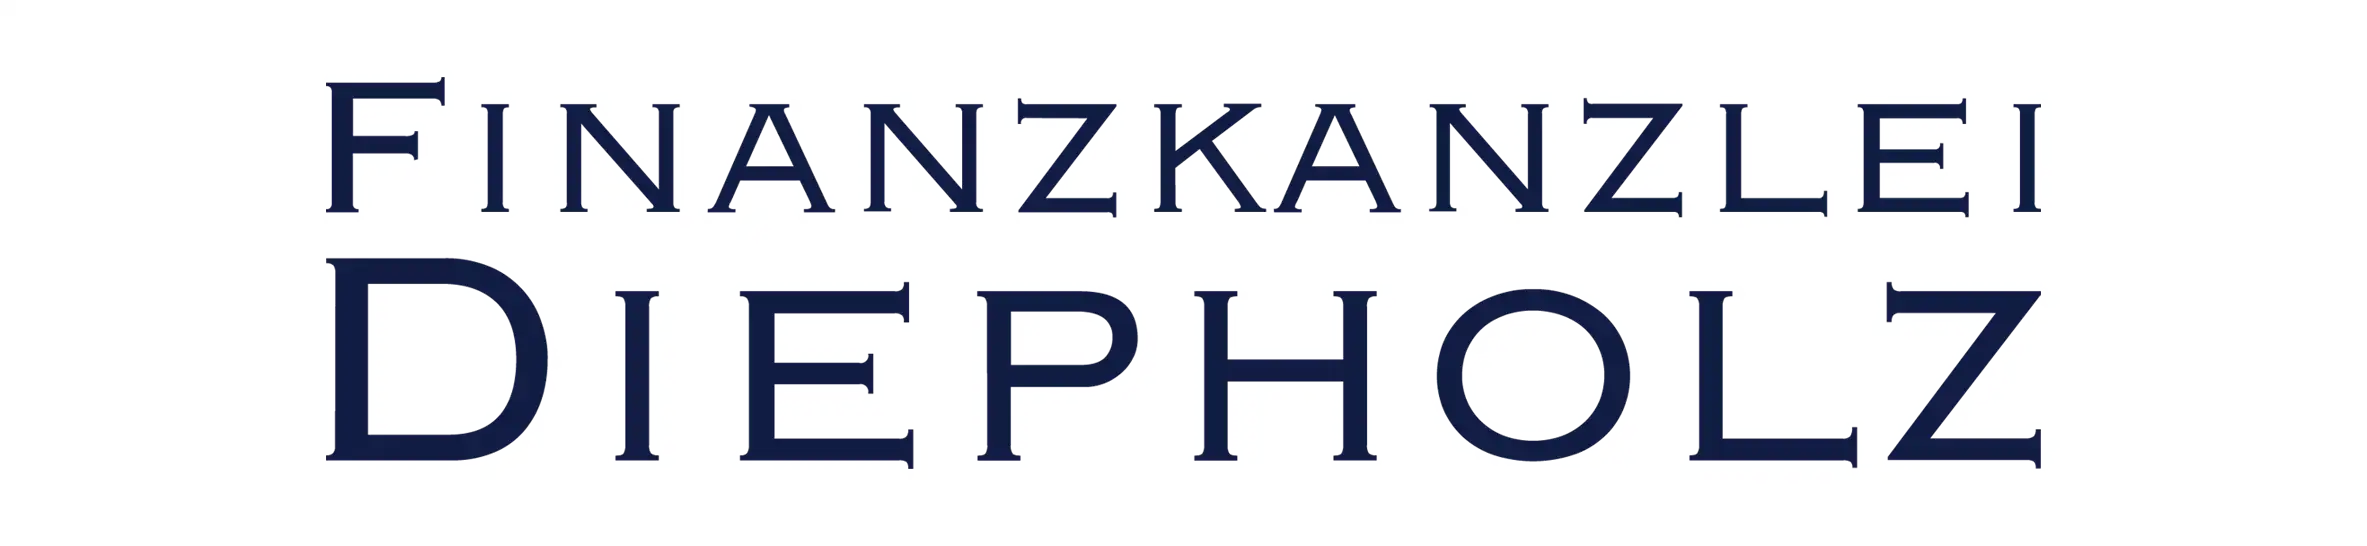 Finanzkanzlei Diepholz GmbH & Co. KG